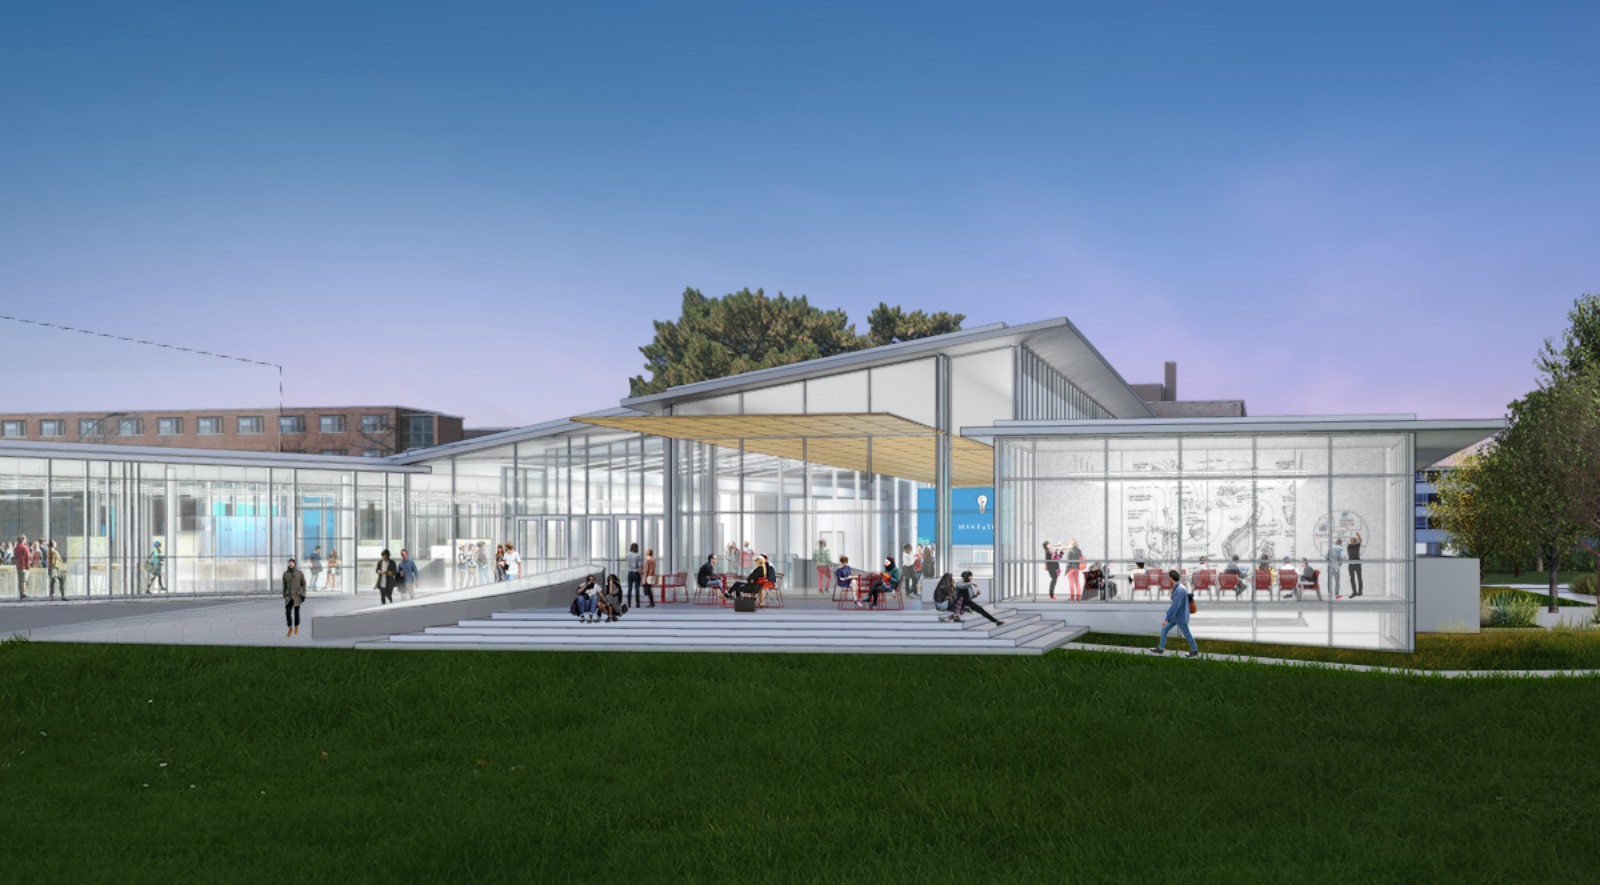 New Siebel Center for Design